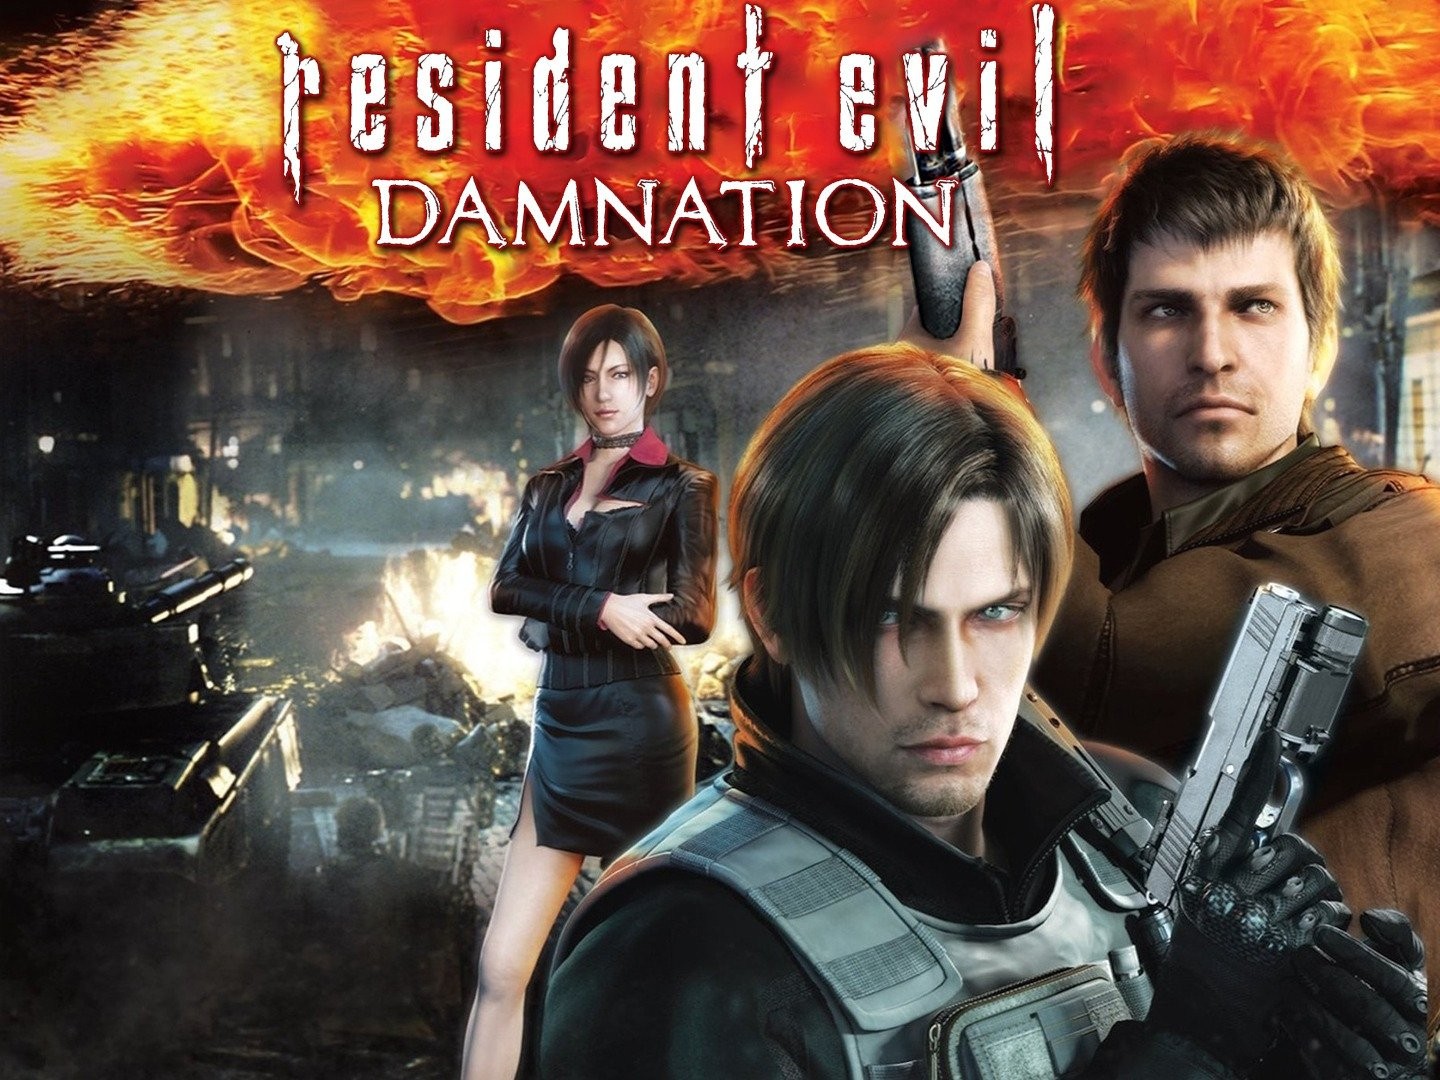 MR X <3  Resident evil damnation, Resident evil, Resident evil game